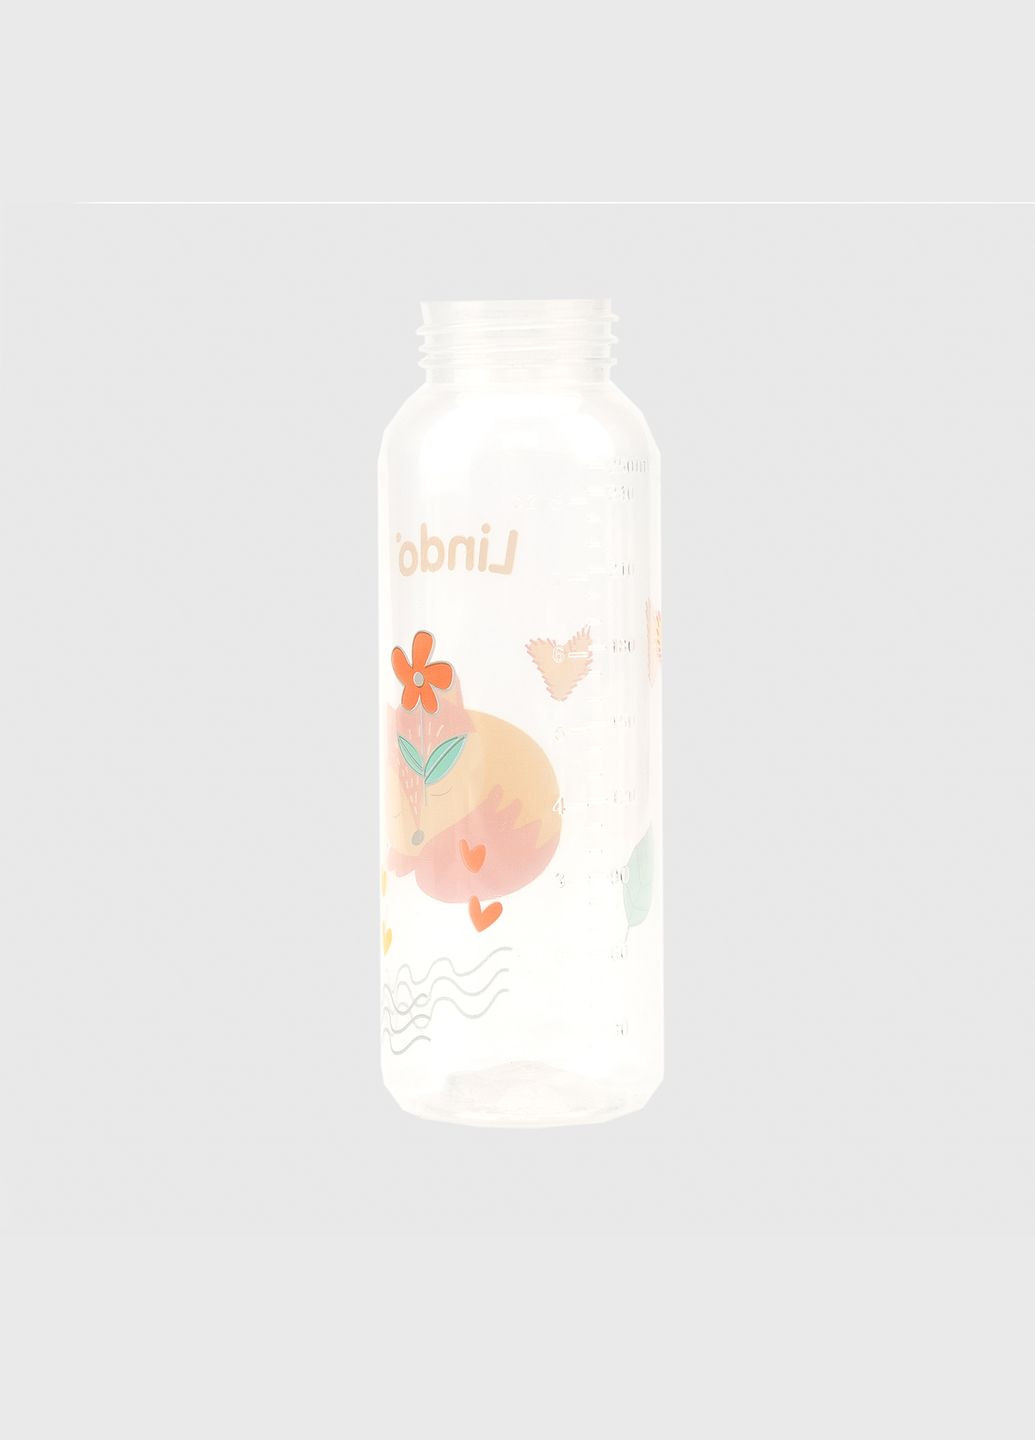 Бутылка круглая LI143 с силиконовой соской Lindo (286420499)